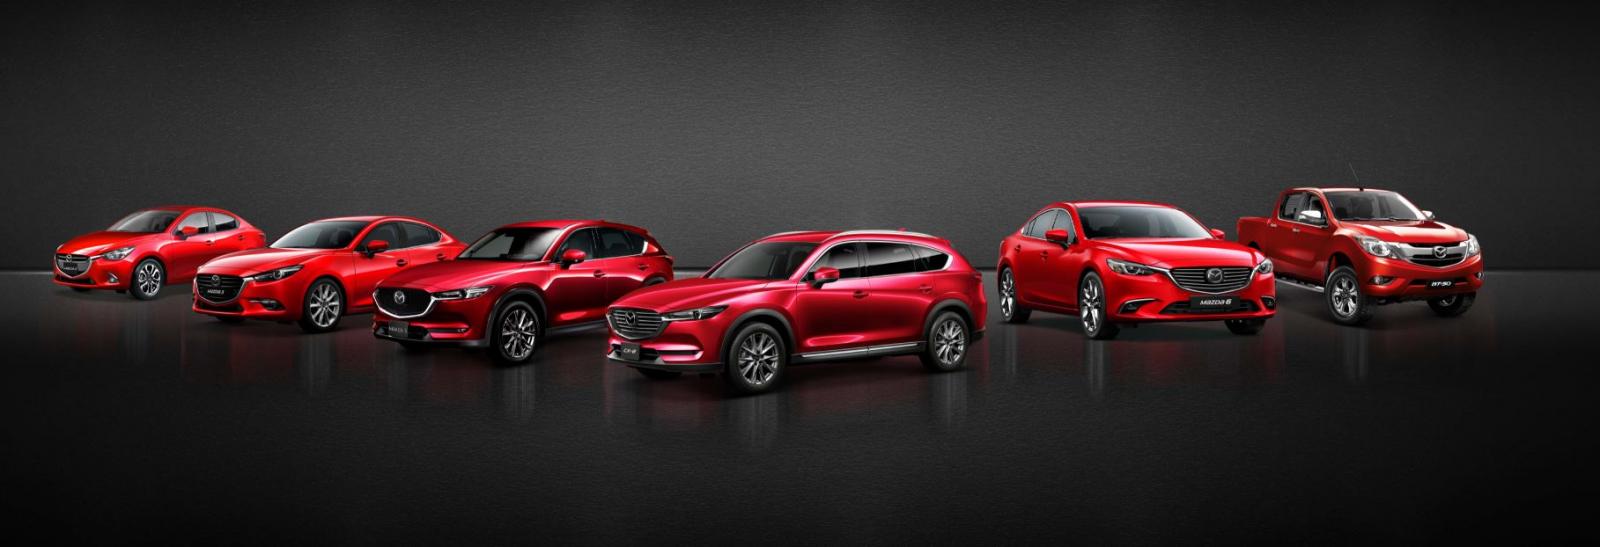 Nhiều mẫu xe Mazda nhận ưu đãi trong tháng 8/2019, cao nhất lên đến 100 triệu đồng 1a